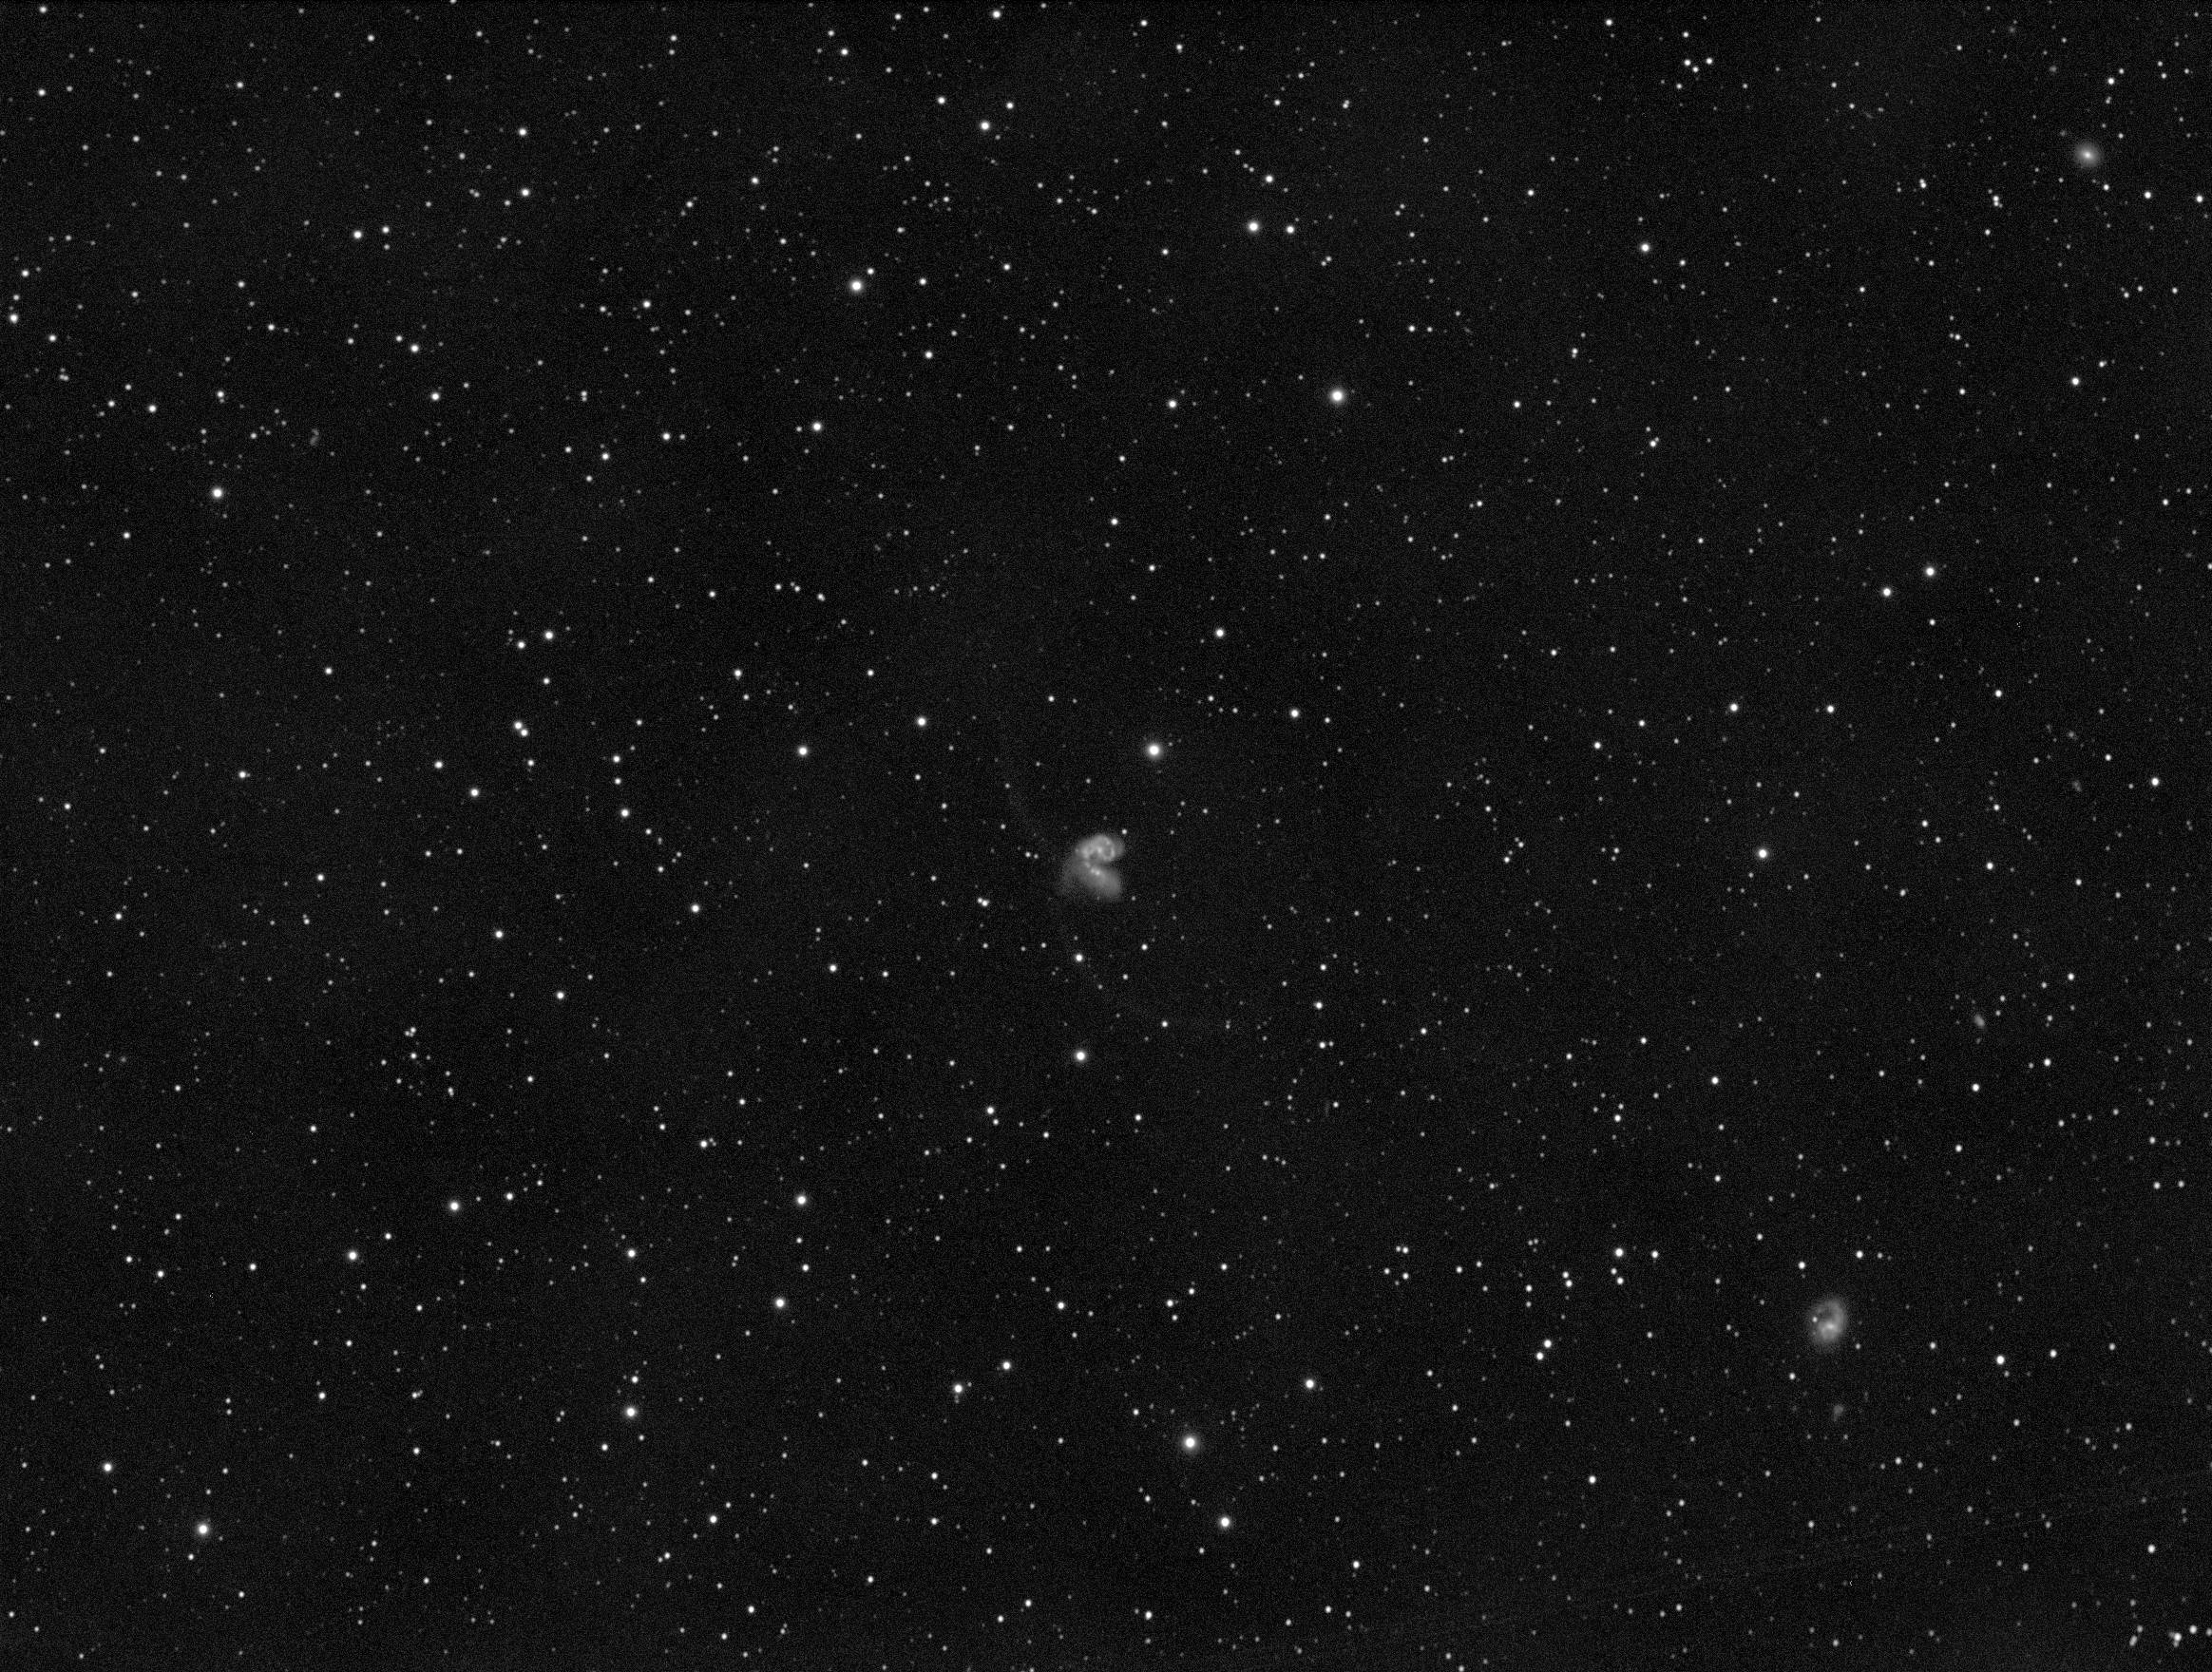 NGC4038_200s_20190506_223628  253xFD  191xF  82xD  0x0R  0x0G  0x0B  0x0RGB  14x200L  _stacked equalised2b.jpg